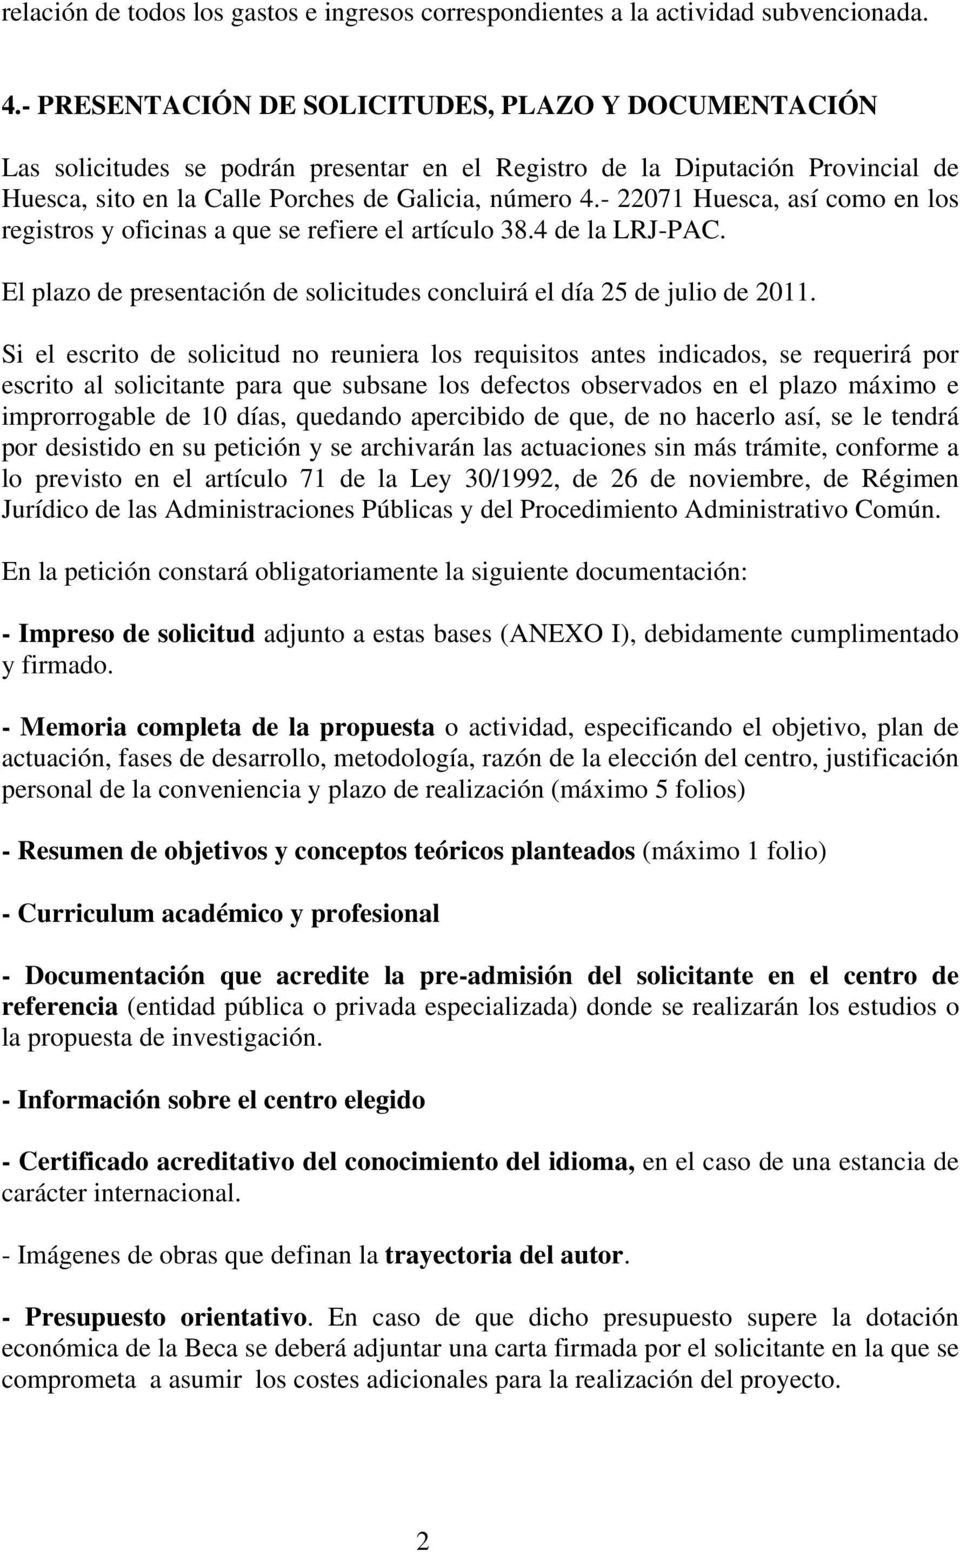 - 22071 Huesca, así como en los registros y oficinas a que se refiere el artículo 38.4 de la LRJ-PAC. El plazo de presentación de solicitudes concluirá el día 25 de julio de 2011.